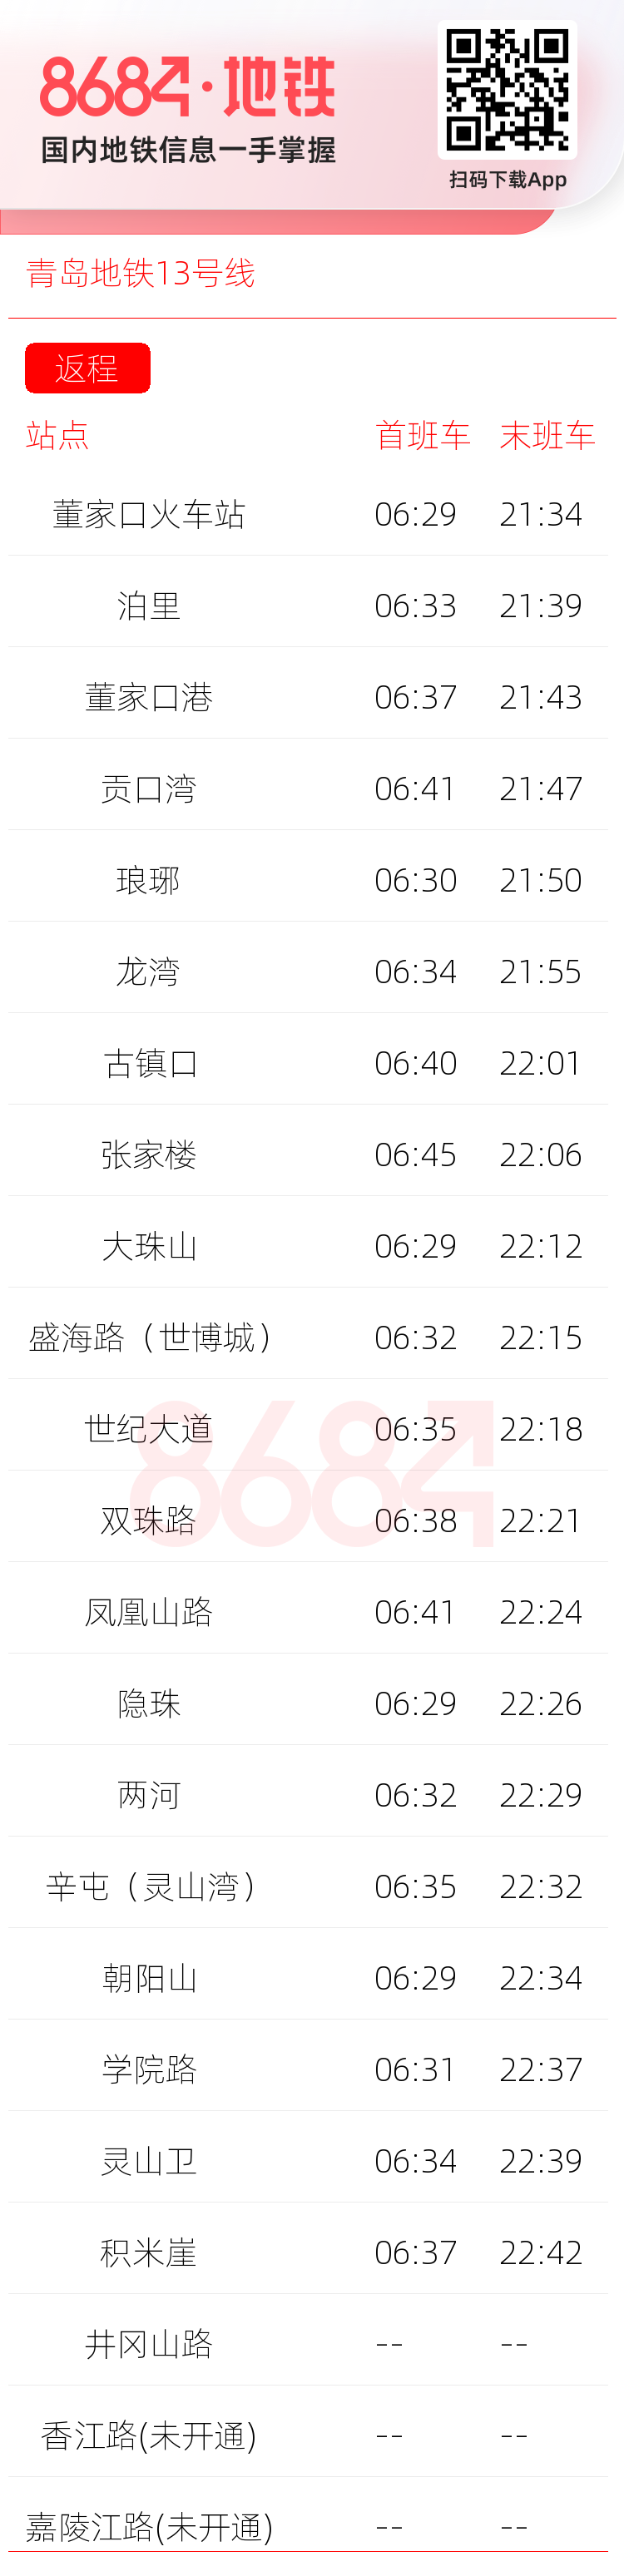 青岛地铁13号线运营时间表